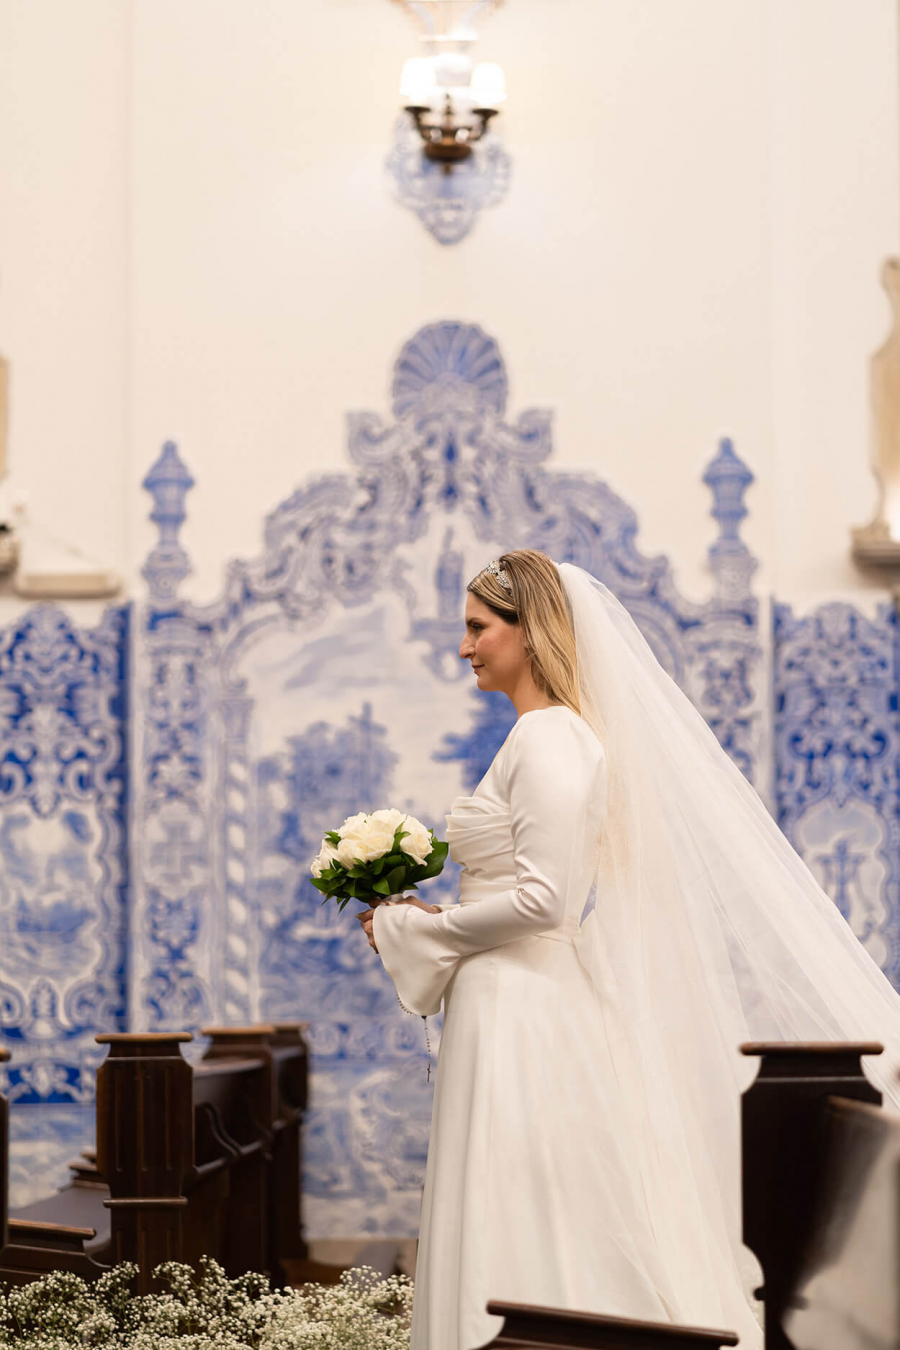  Casamento-na-igreja (14)